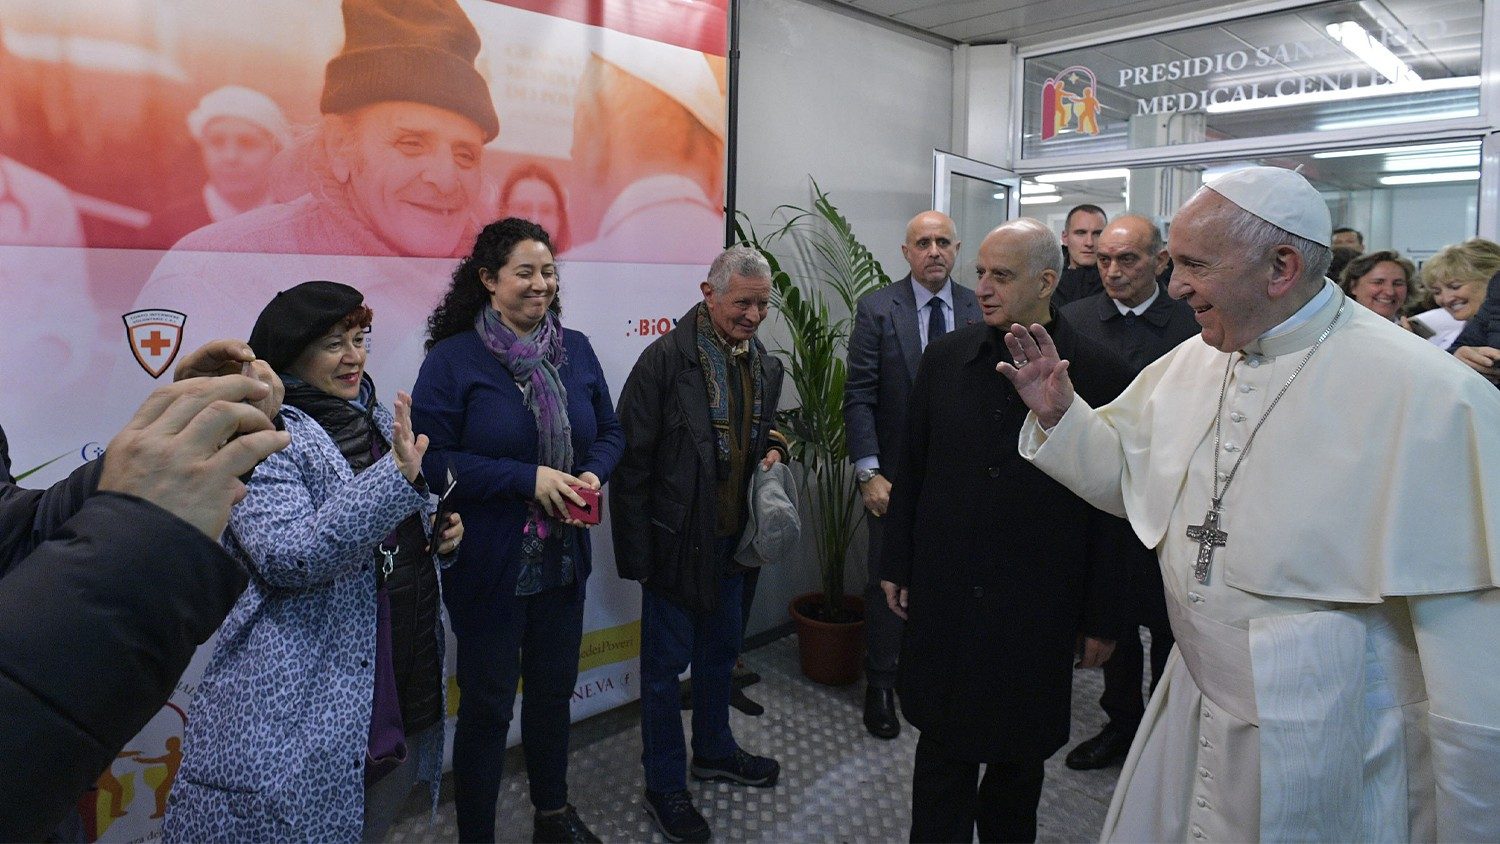 Đức Thánh Cha Phanxicô đã đến quảng trường thánh Phêrô thăm cơ sở y tế dành cho người nghèo và sau đó đến Palazzo Migliori để khánh thành trung tâm đón tiếp người nghèo và người vô gia cư. Ảnh: AFP